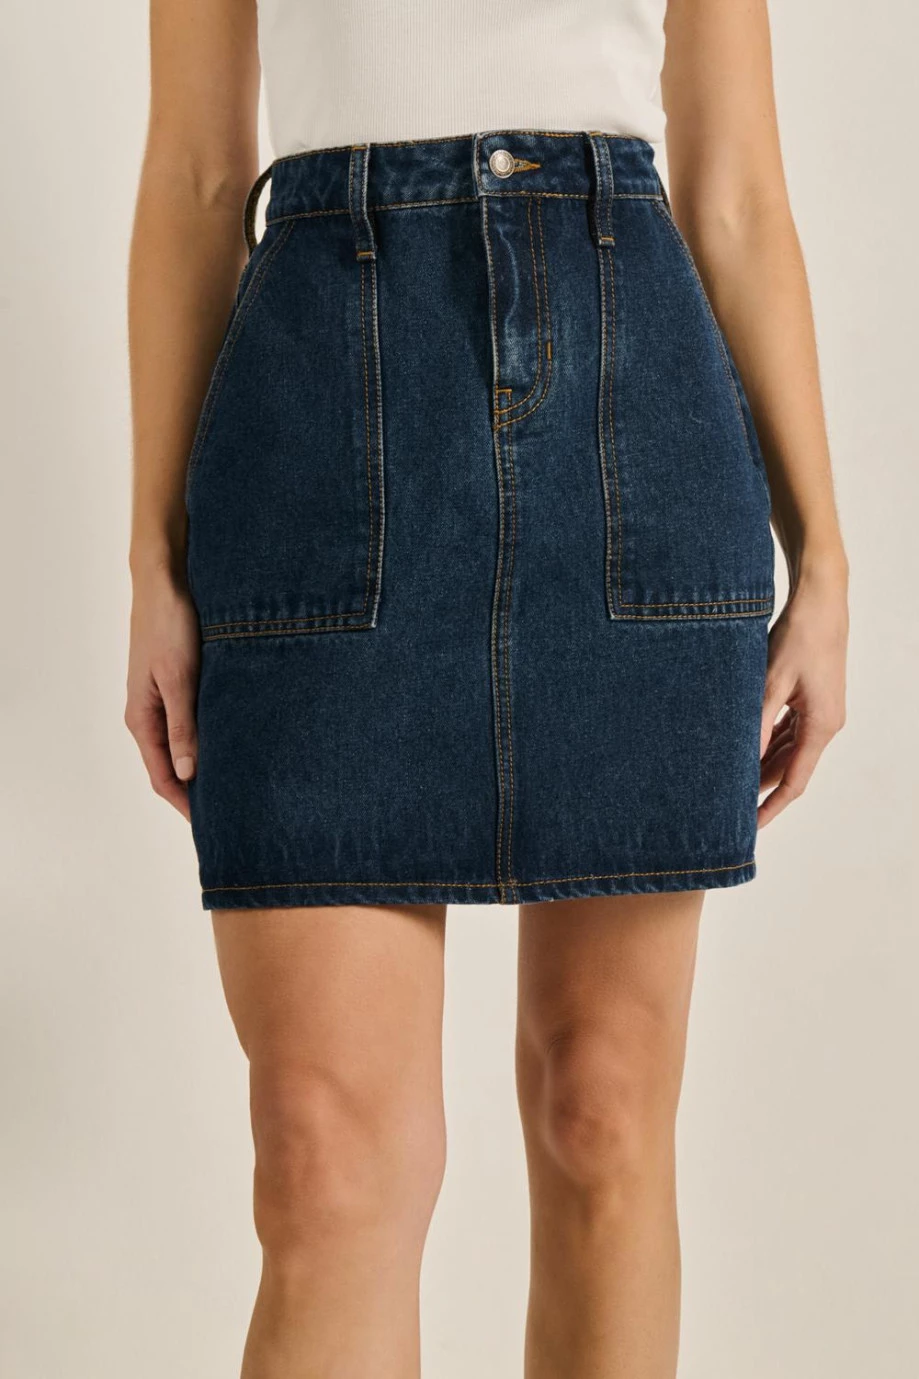 Falda azul corta en jean carpintero con bolsillos de parche